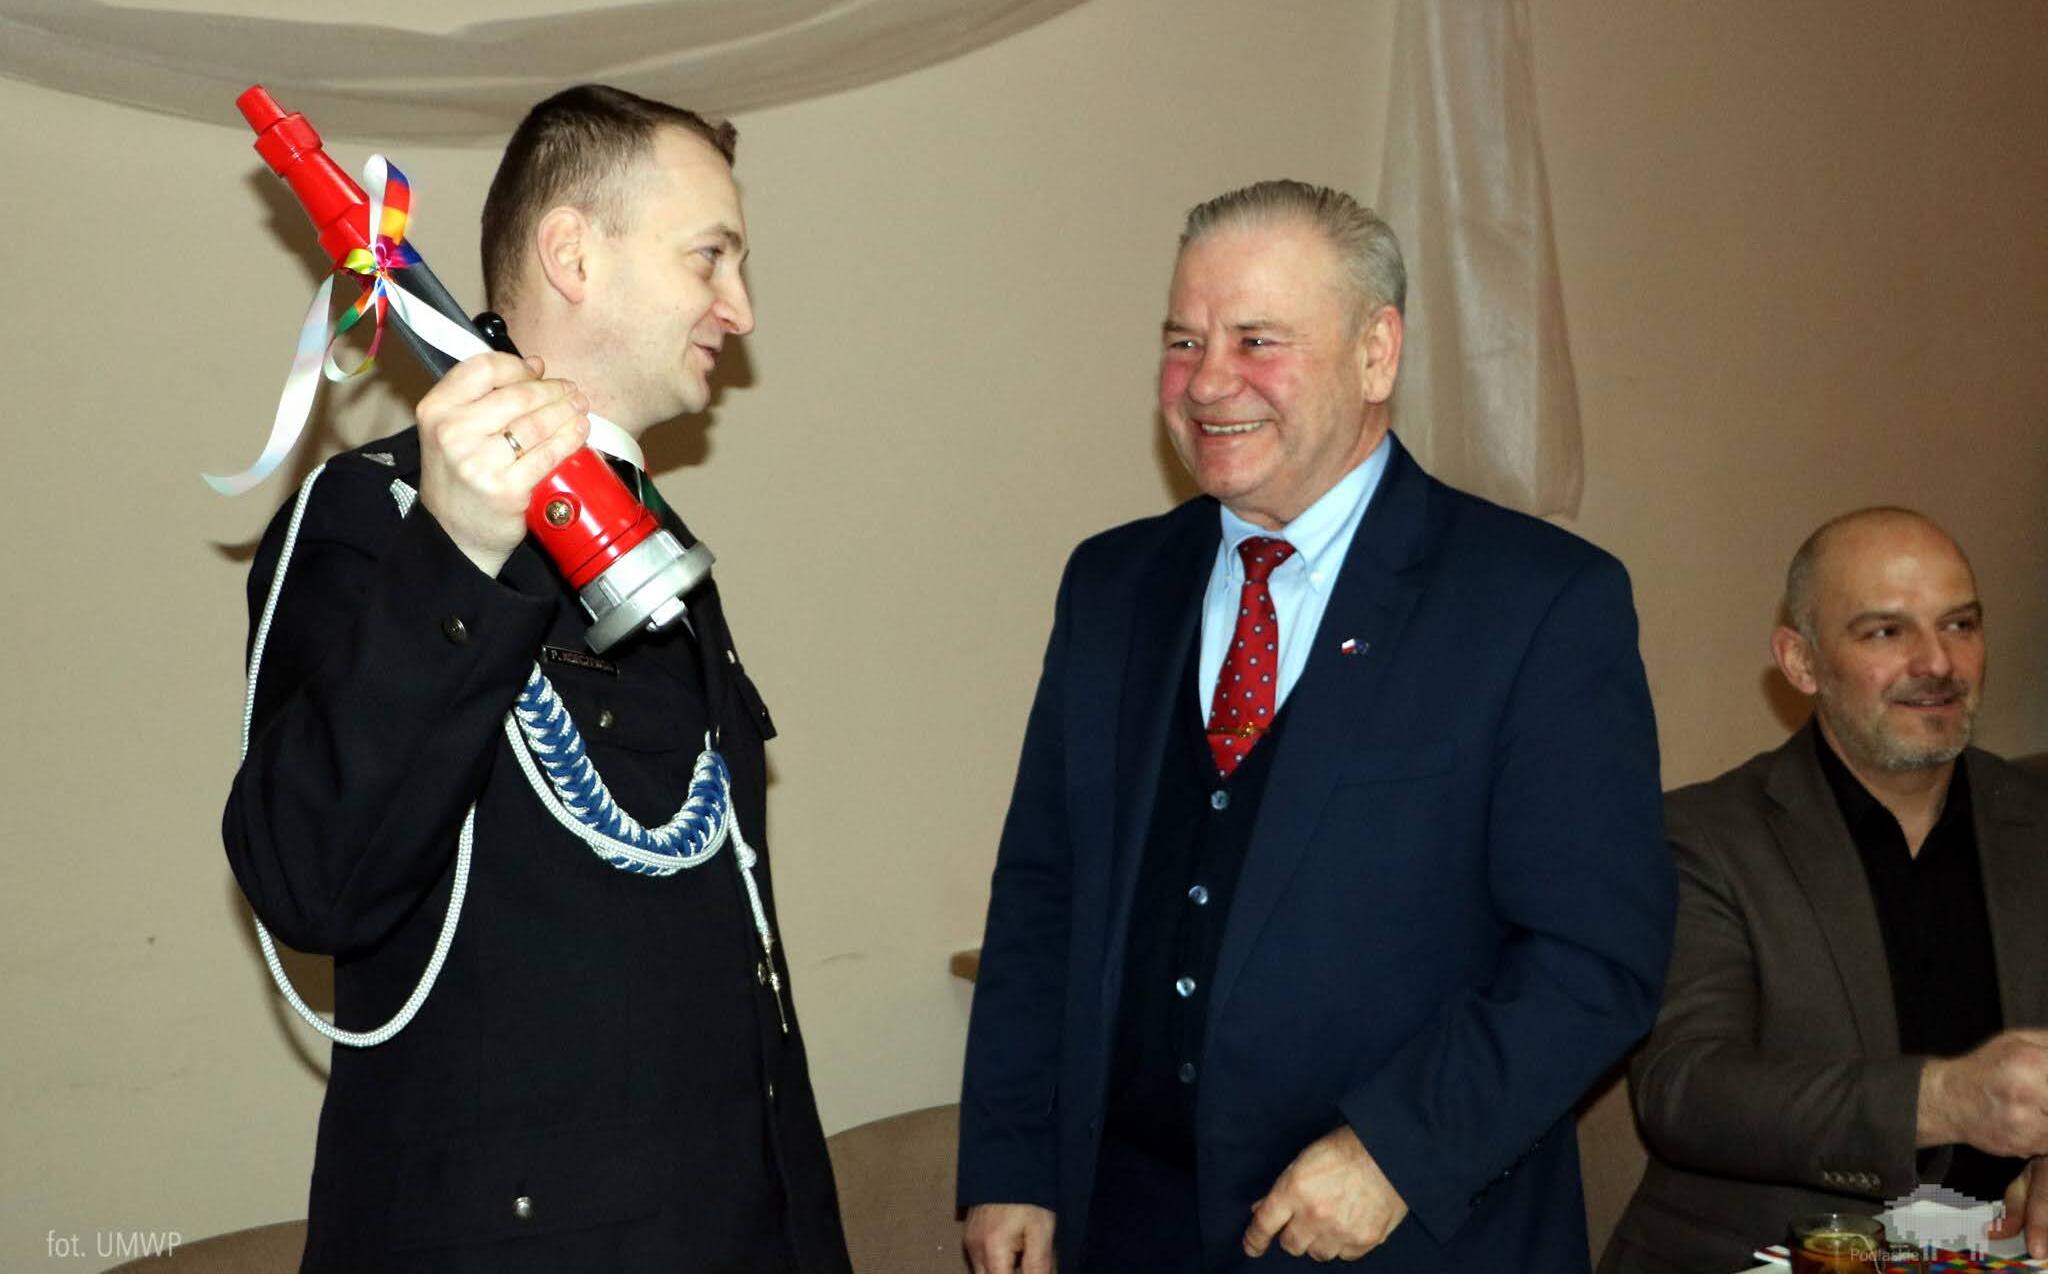 Wicemarszałek Marek Olbryś z prawej. Z lewej strażak z prądownicą w uniesionej dłoni.